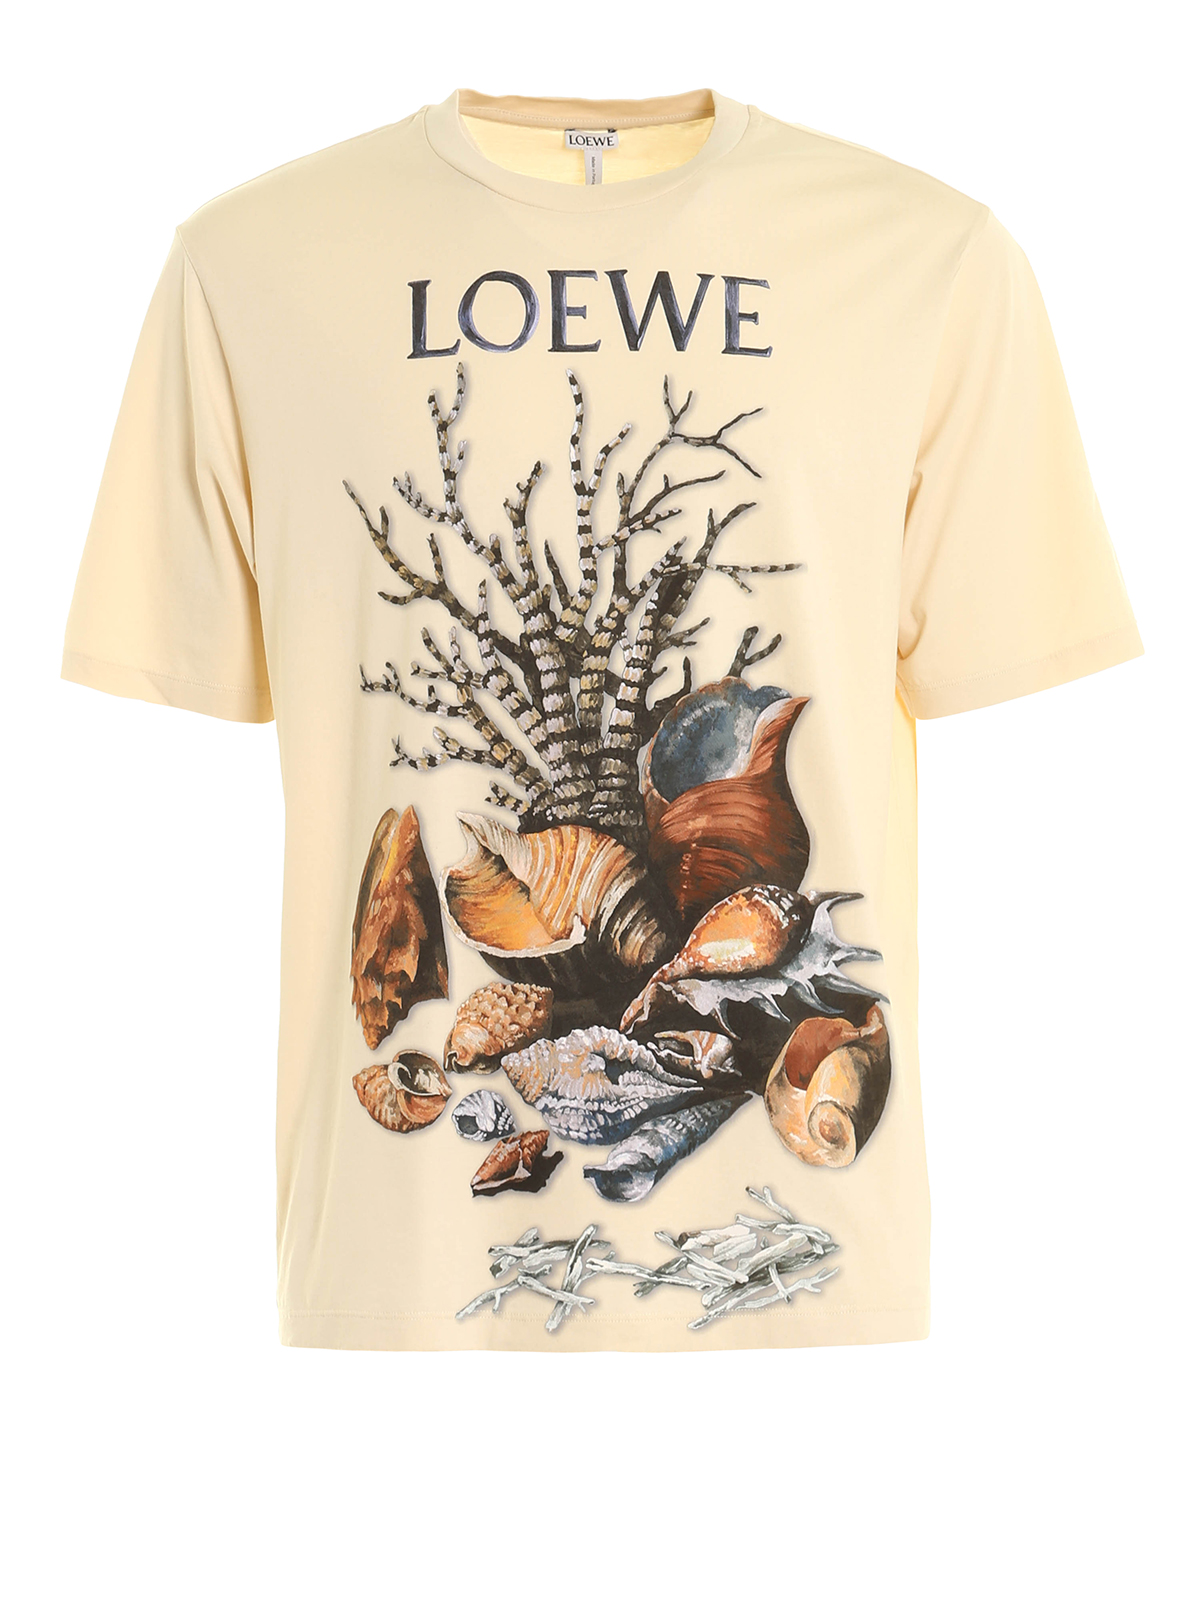 Tシャツ Loewe - Tシャツ メンズ - ベージュ - H2179813CR2230